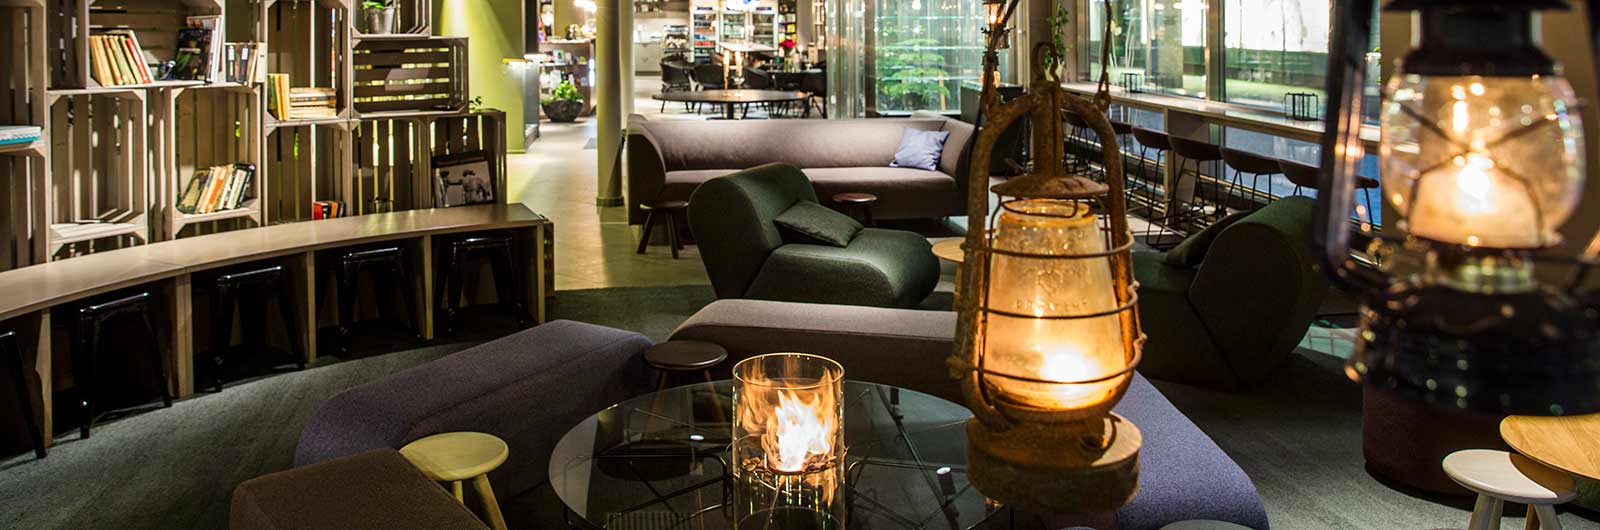 Lounge på Göteborg city hotell